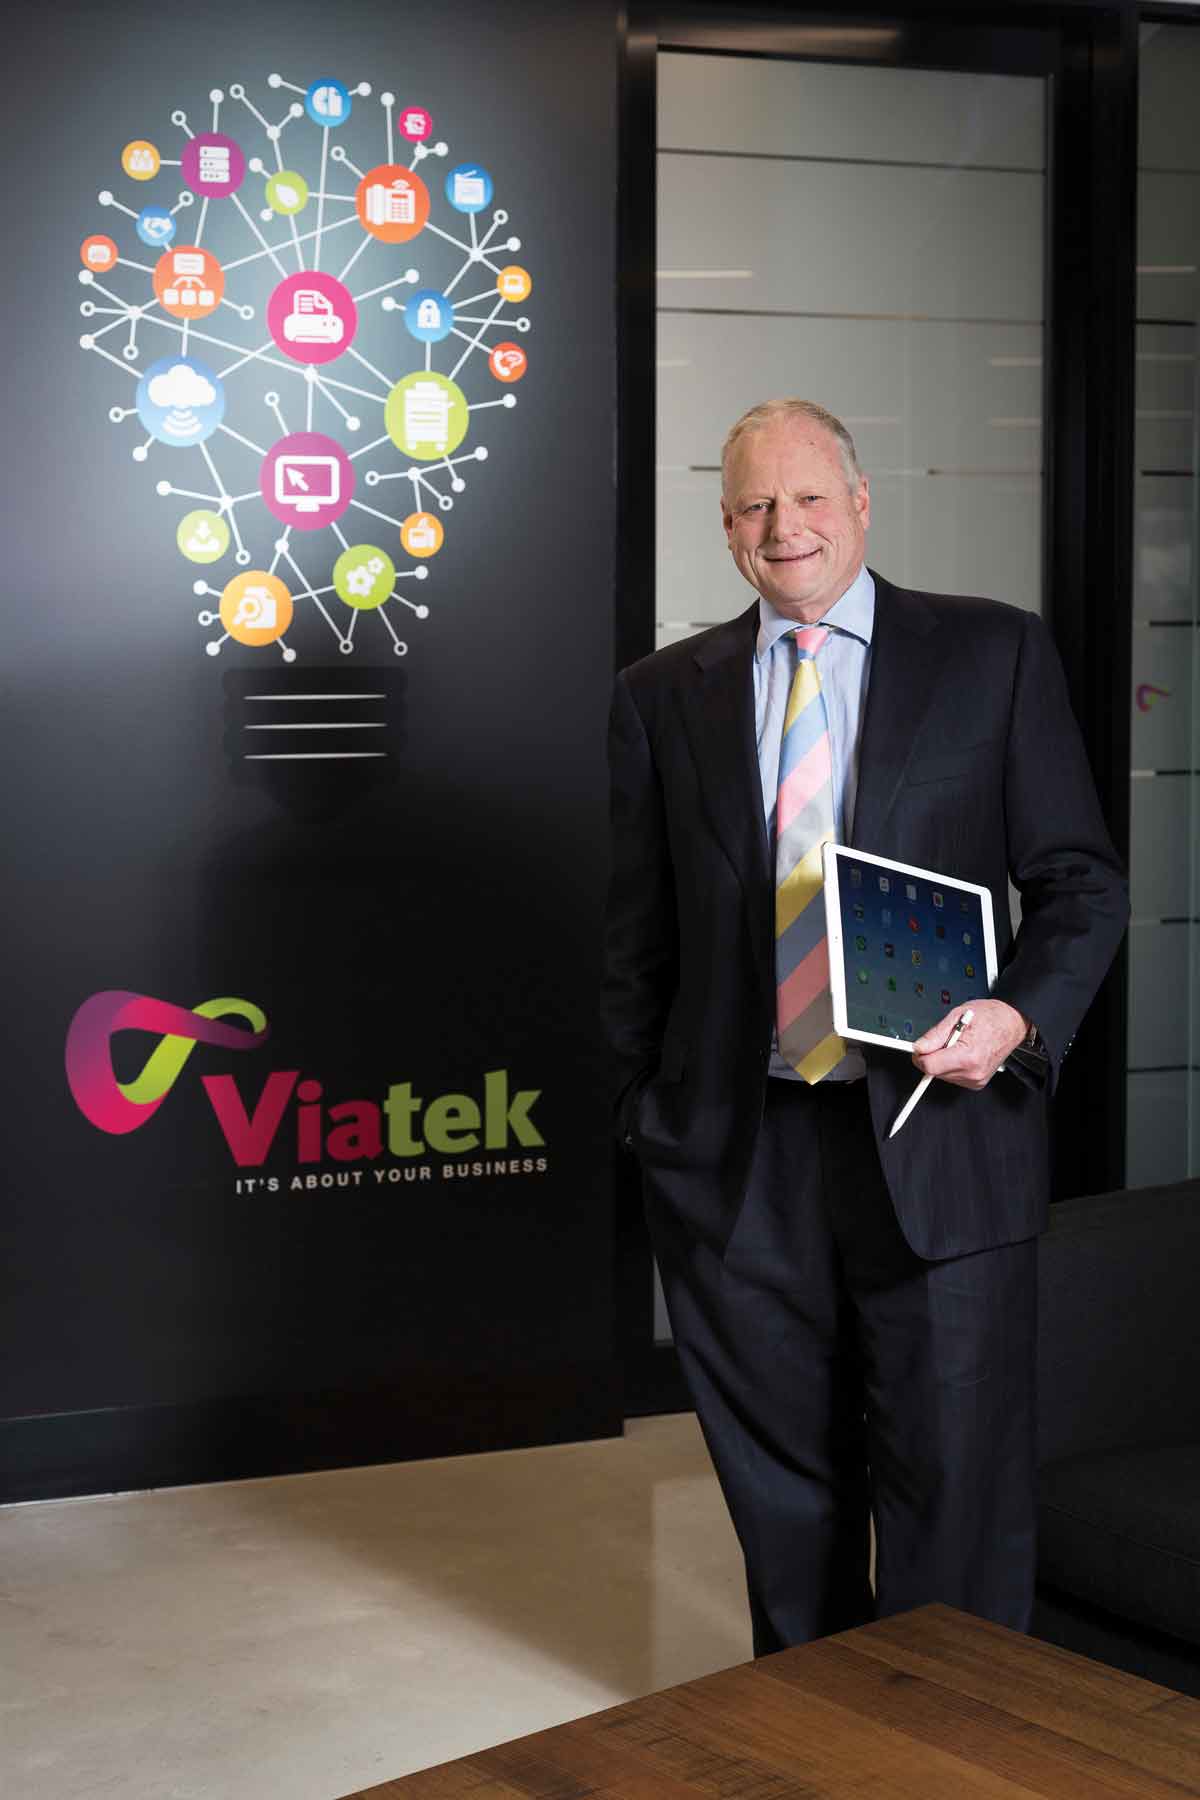 Michael Doery, CEO	of Viatek